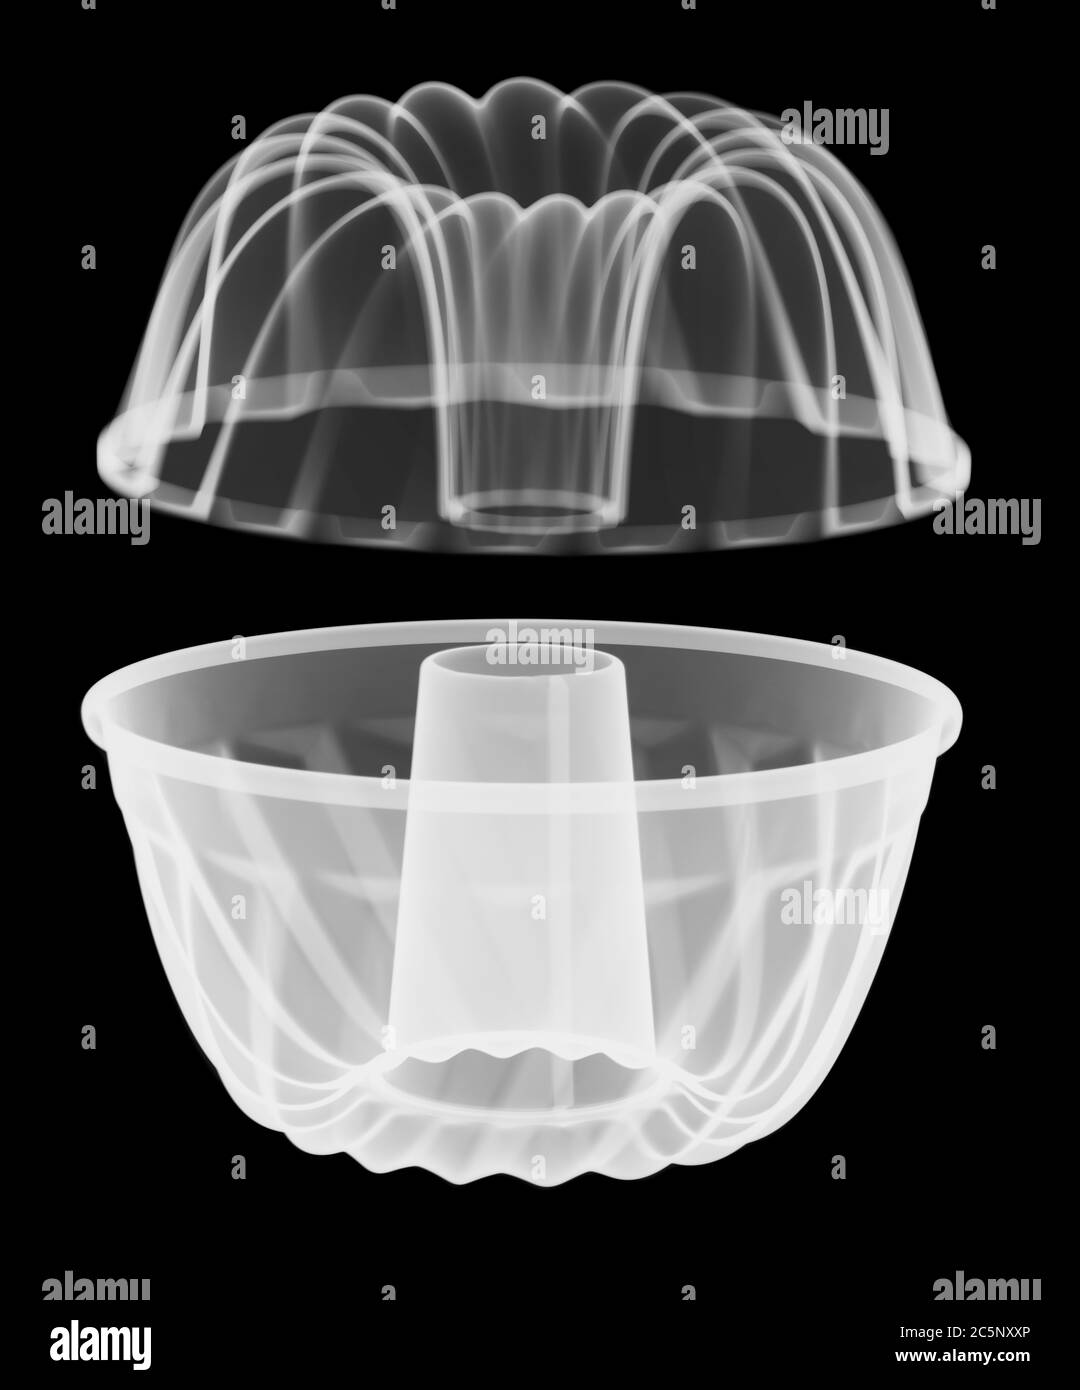 Molde circular acanalado para bizcochos, rayos X. Foto de stock